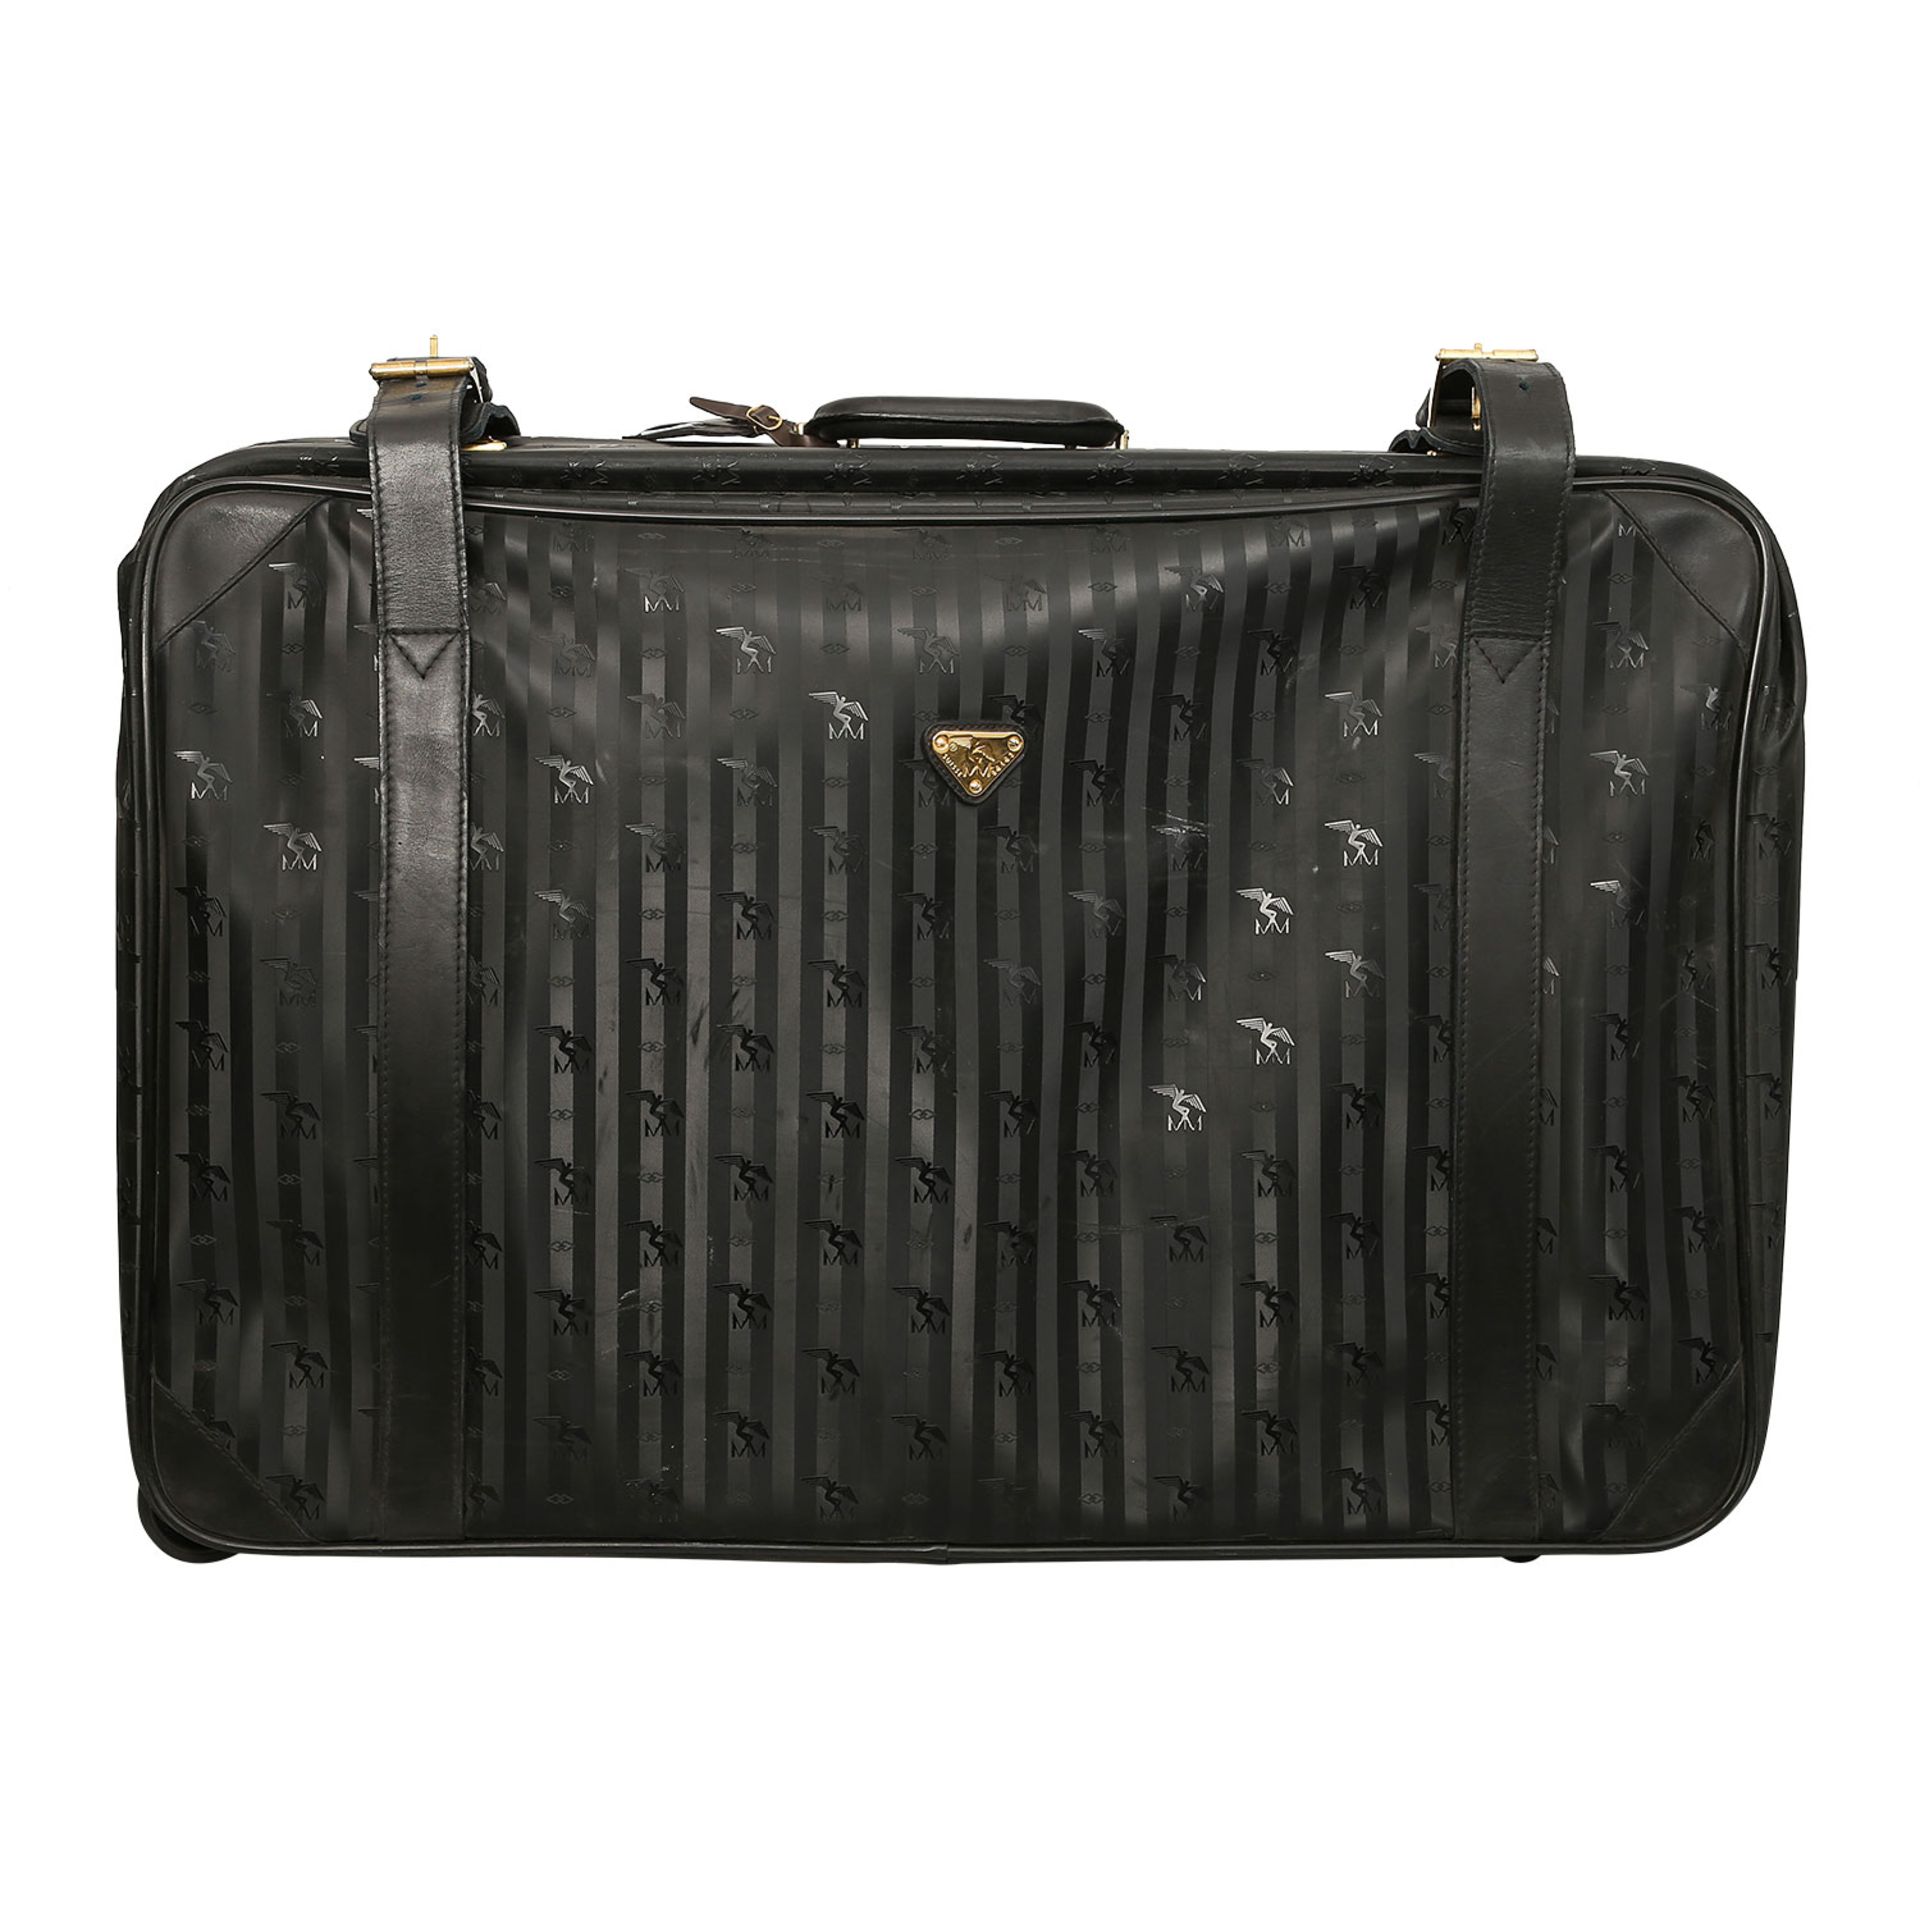 MAISON MOLLERUS VINTAGE Koffer.Synthetik in Schwarz mit Logo-Struktur und goldfarbener Hardware,